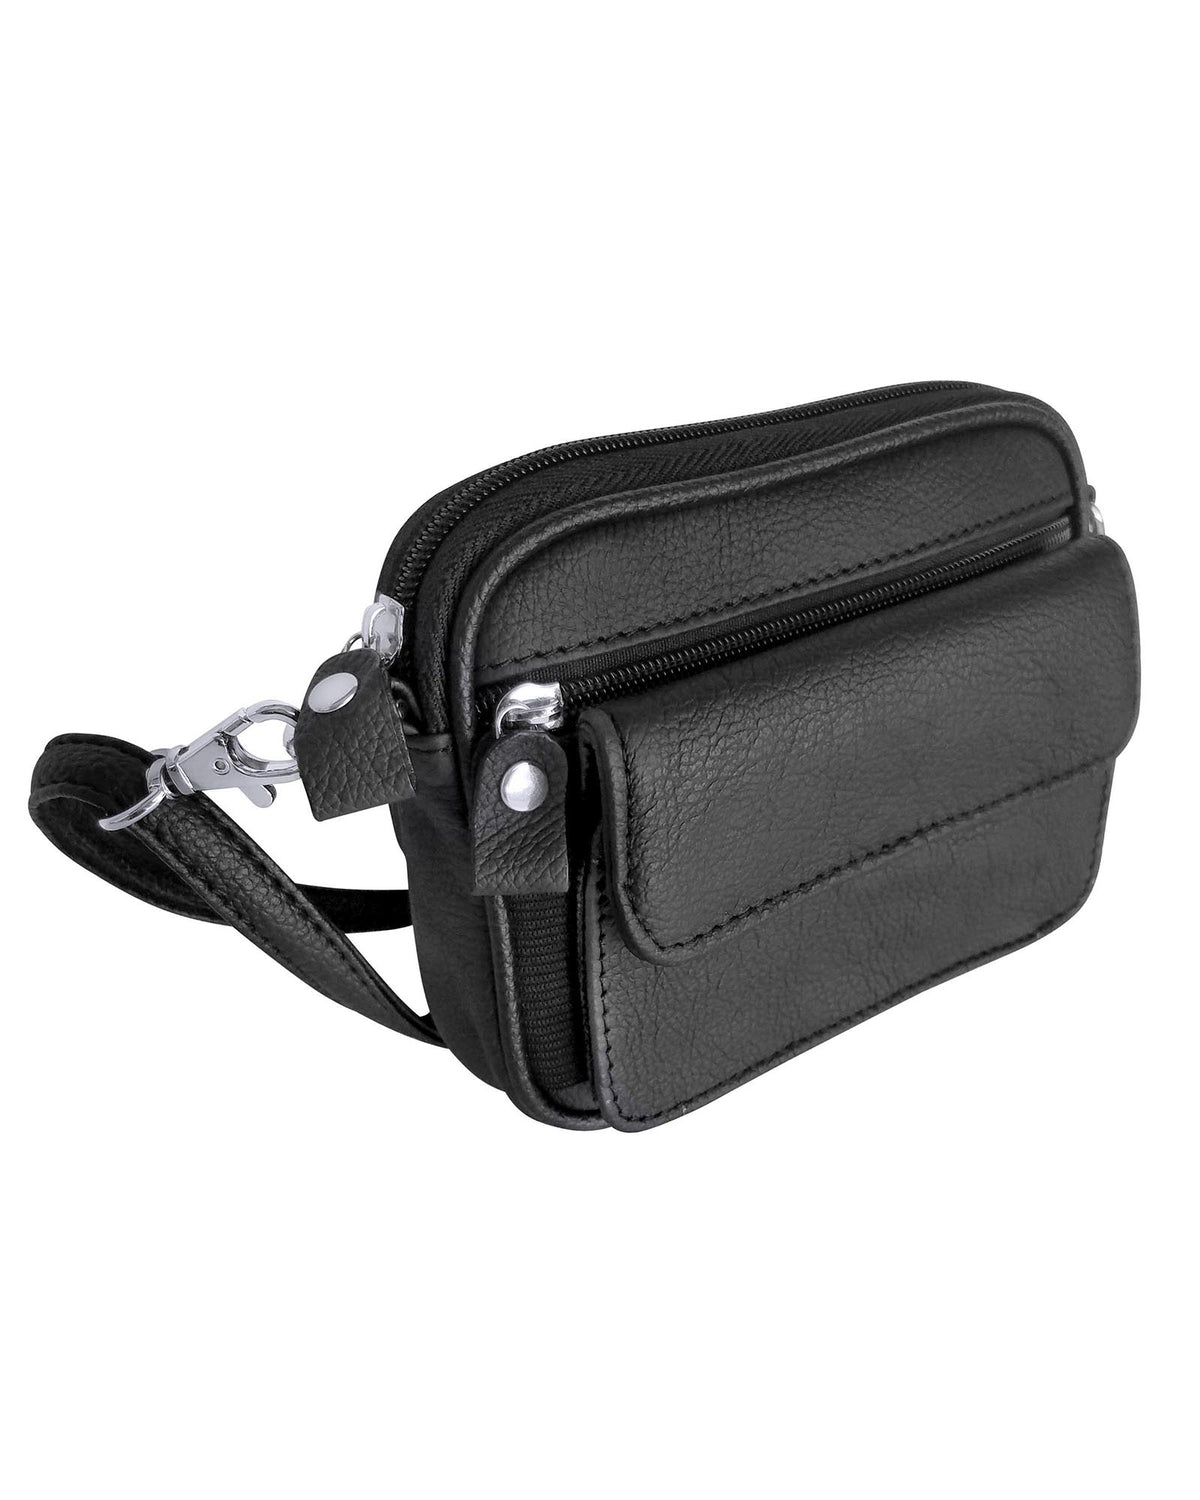 Bag5012 Utility Belt Bag